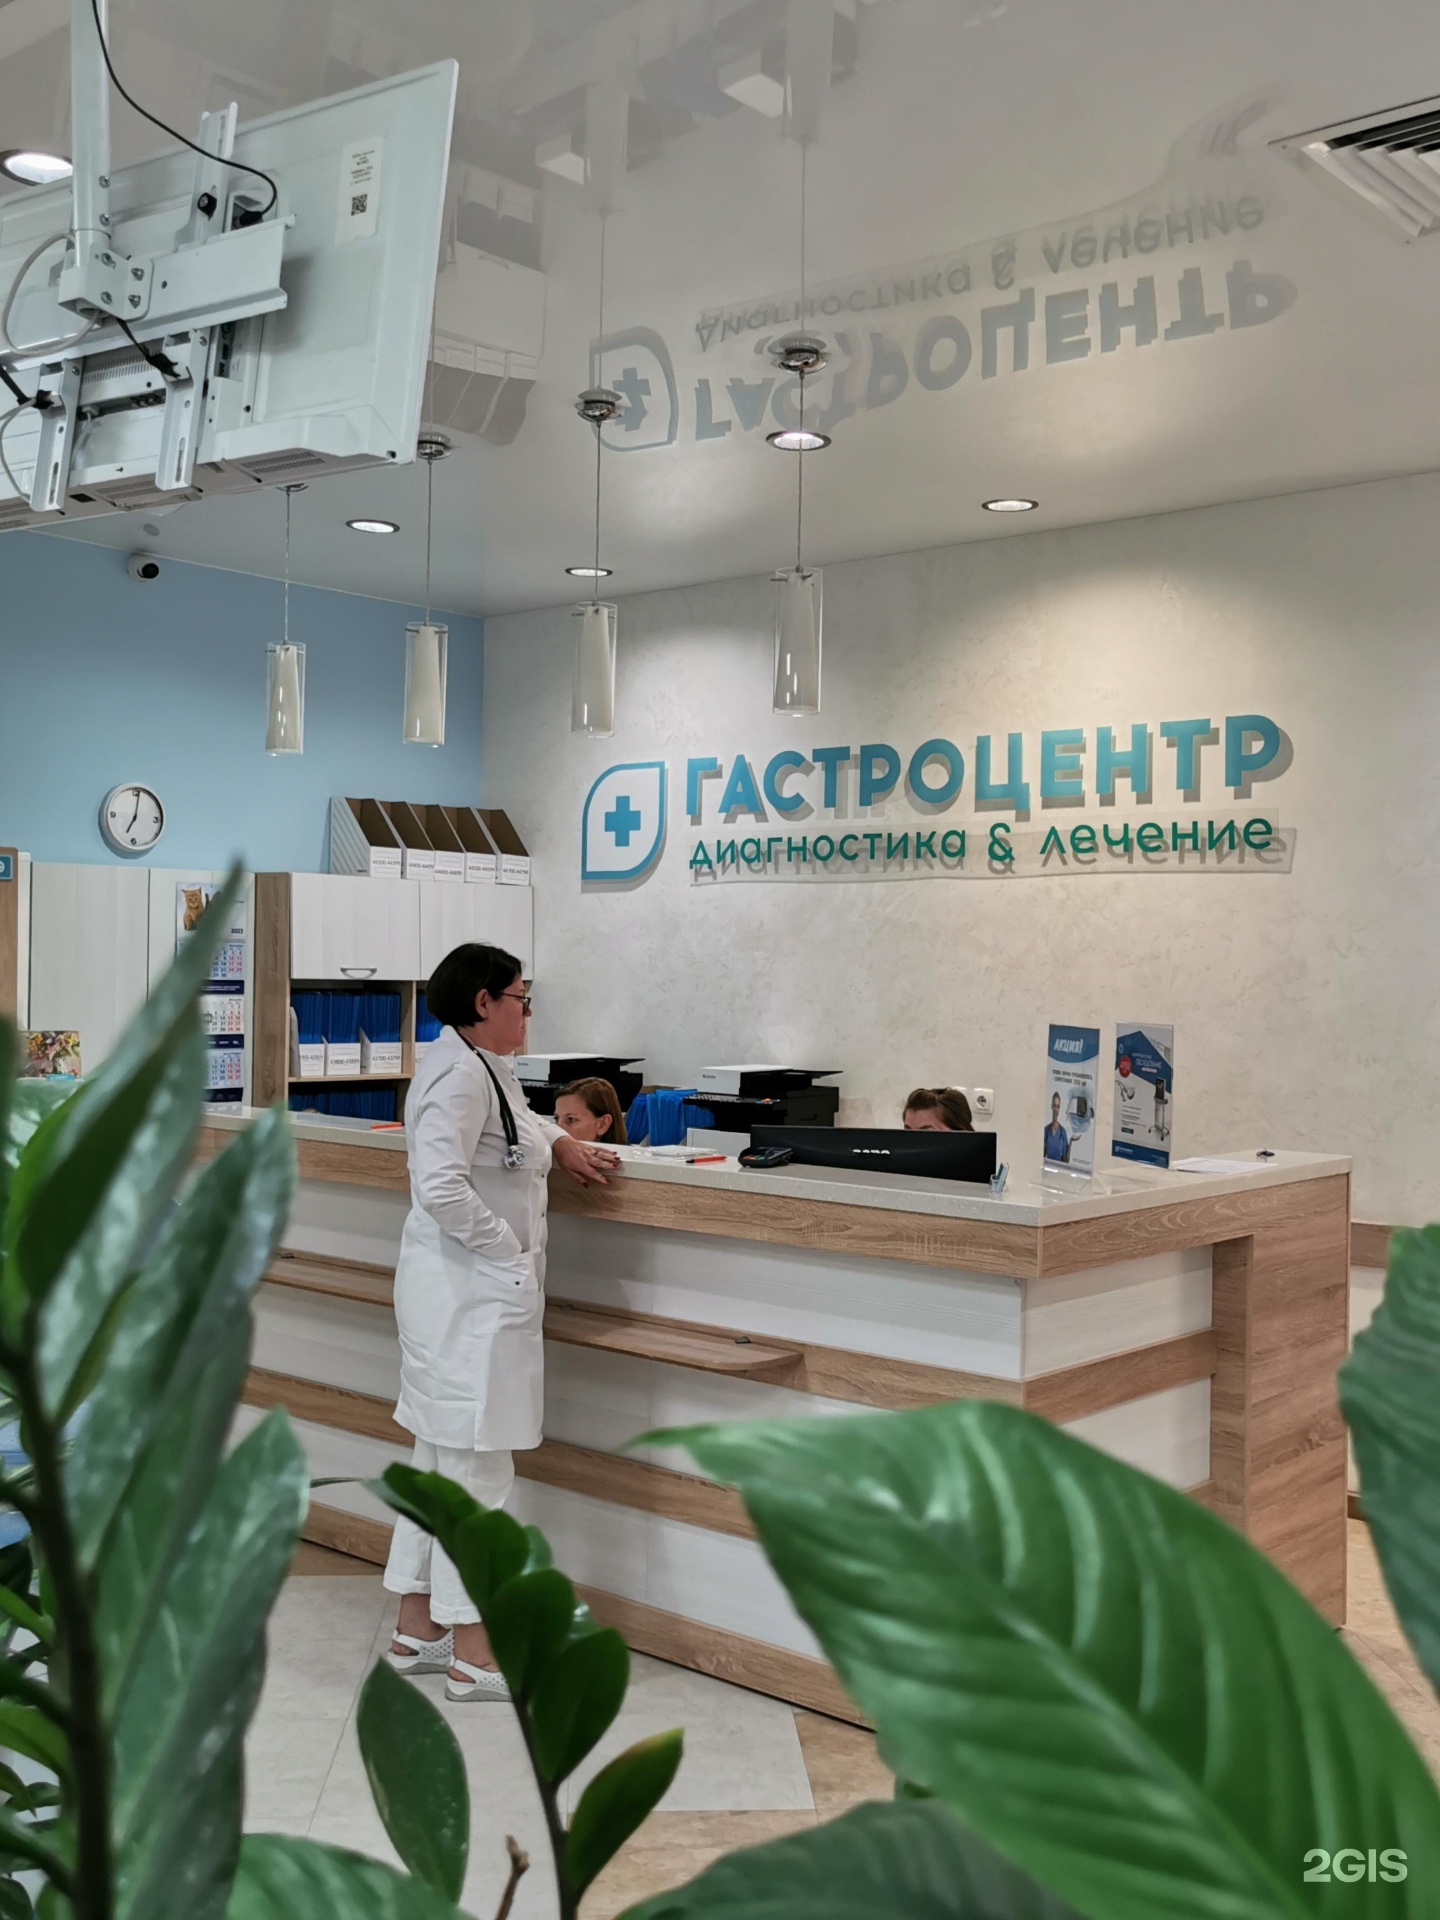 Клиника фабричная. Гастроцентр в Новосибирске на фабричной 4/1 телефон.